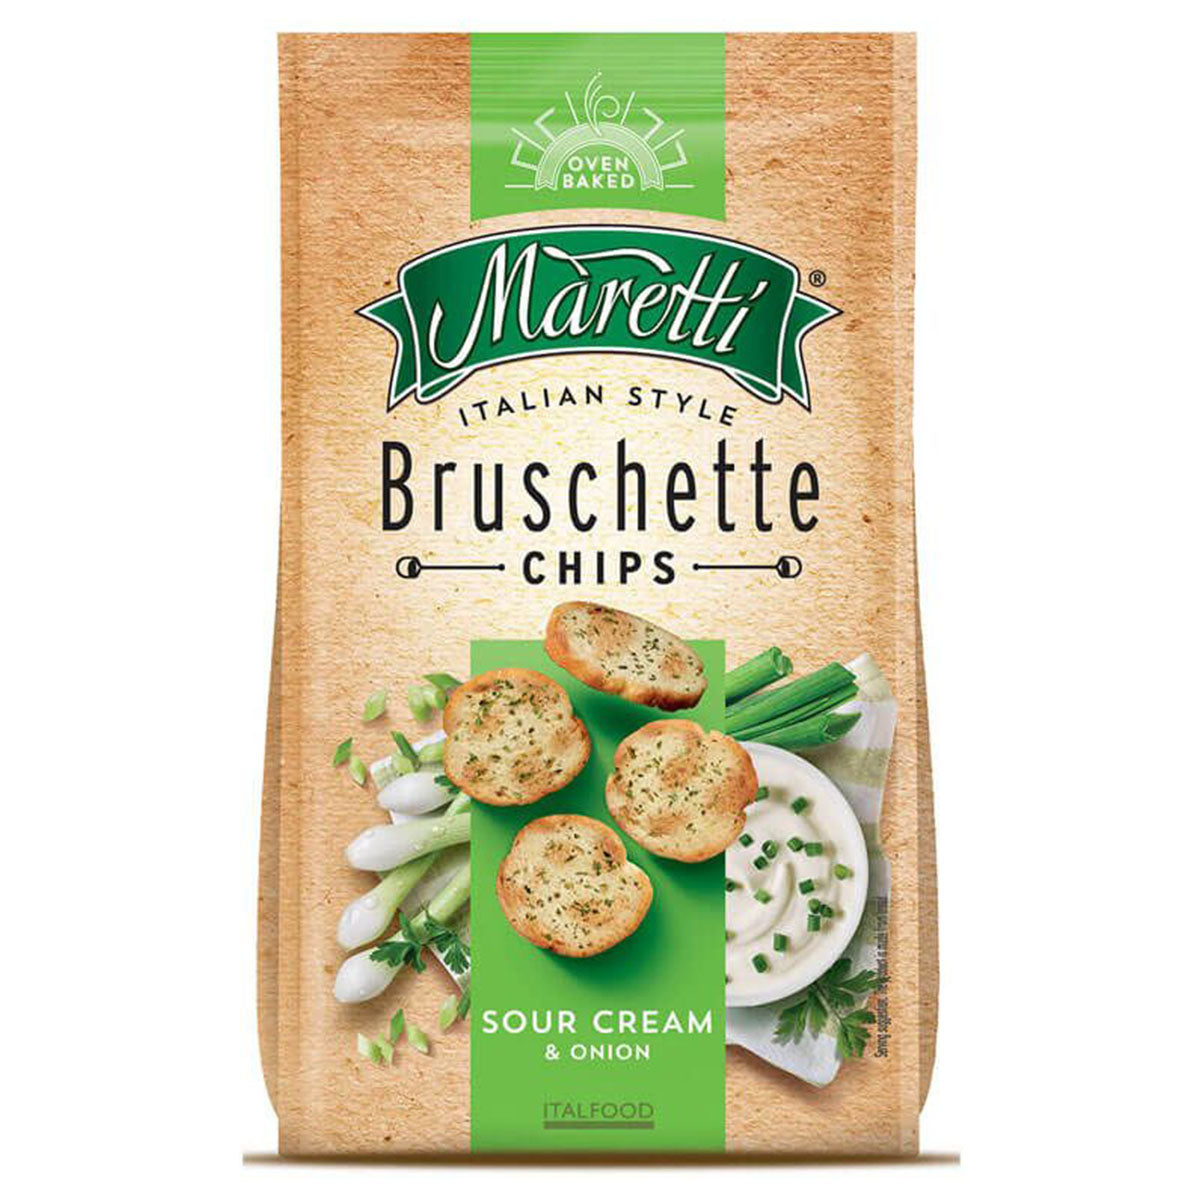 Maretti - Bruschette Sour Cream & Onion - 70g - Continental Food Store